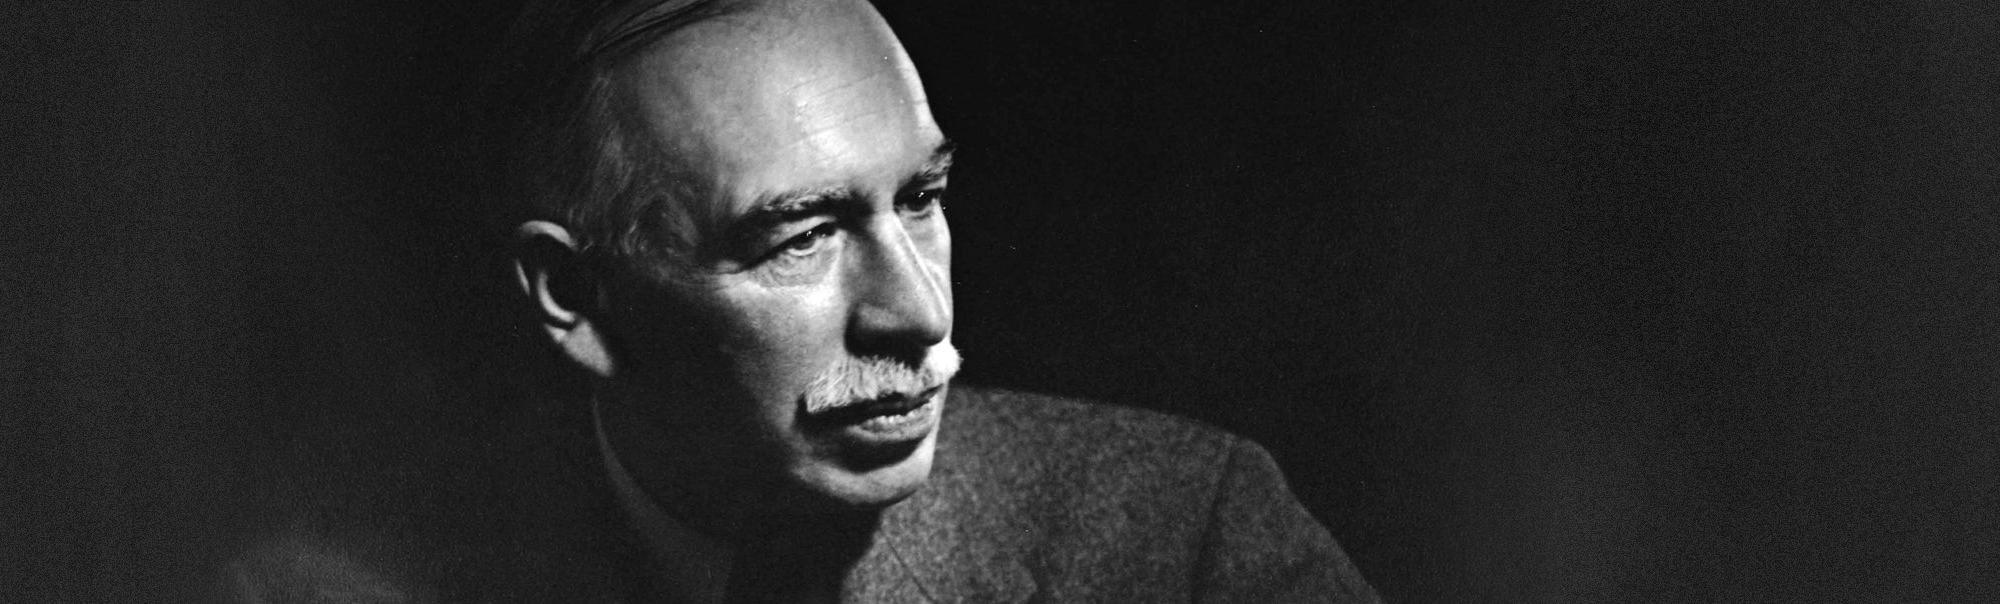 John Maynard Keynes: His System and Its Fallacies